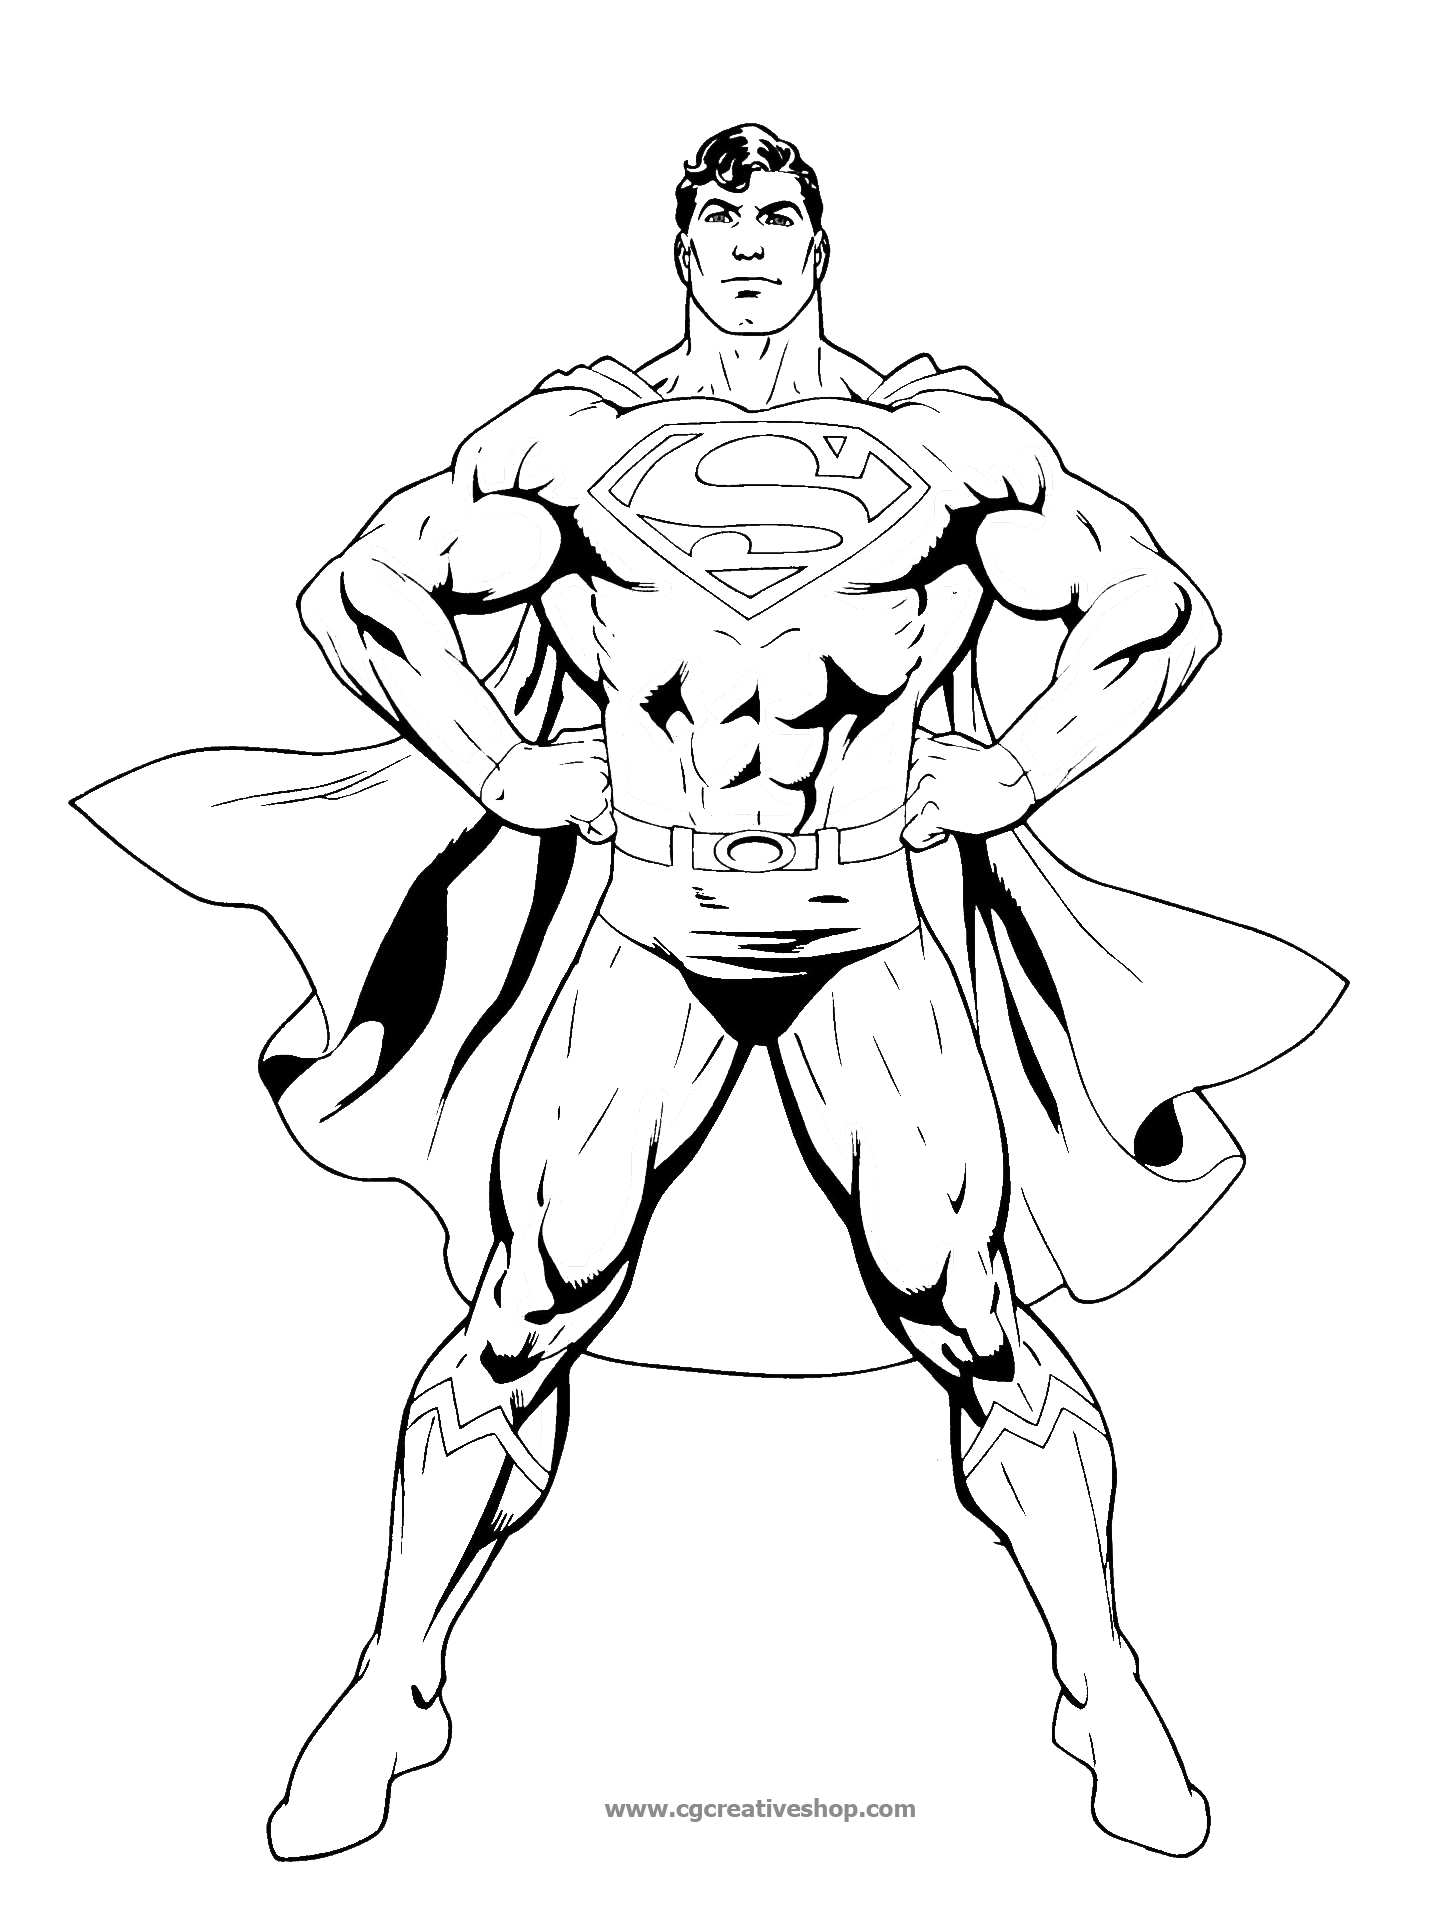 Superman, disegno da colorare - Cgcreativeshop